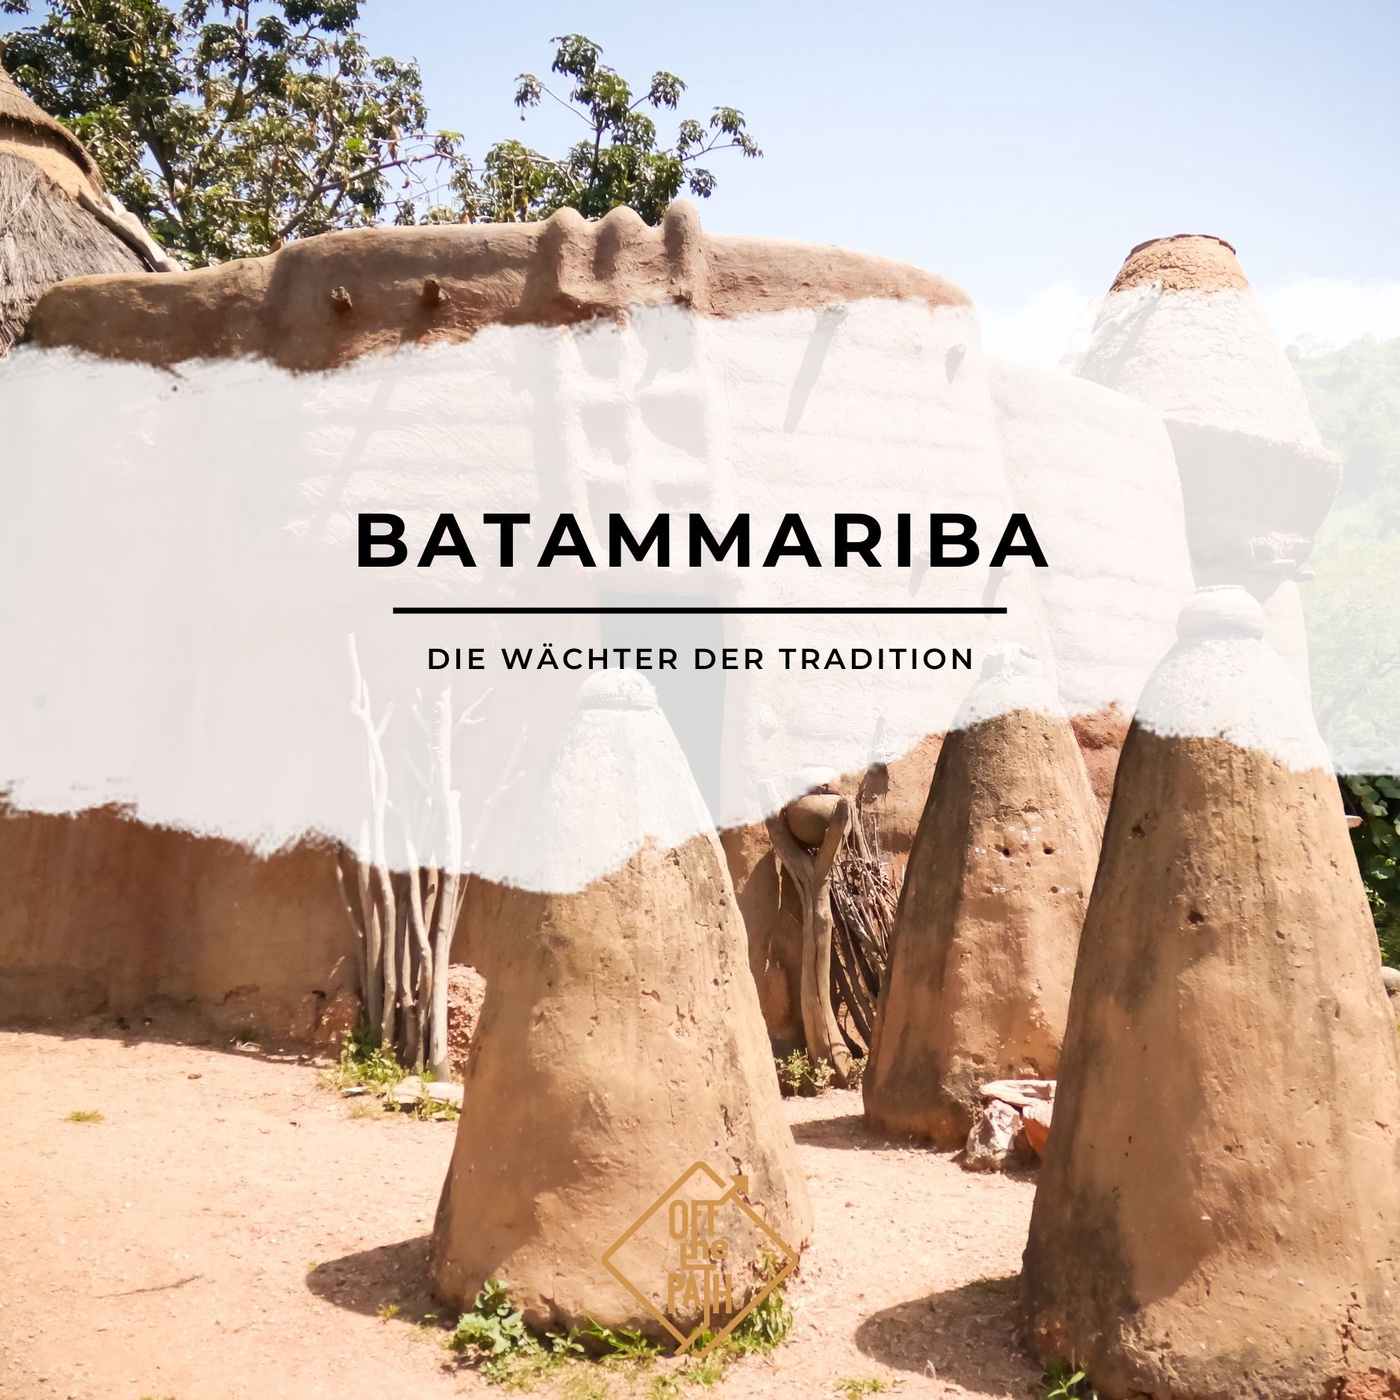 Die Wächter der Tradition: Ein Einblick in das Leben der Batammariba